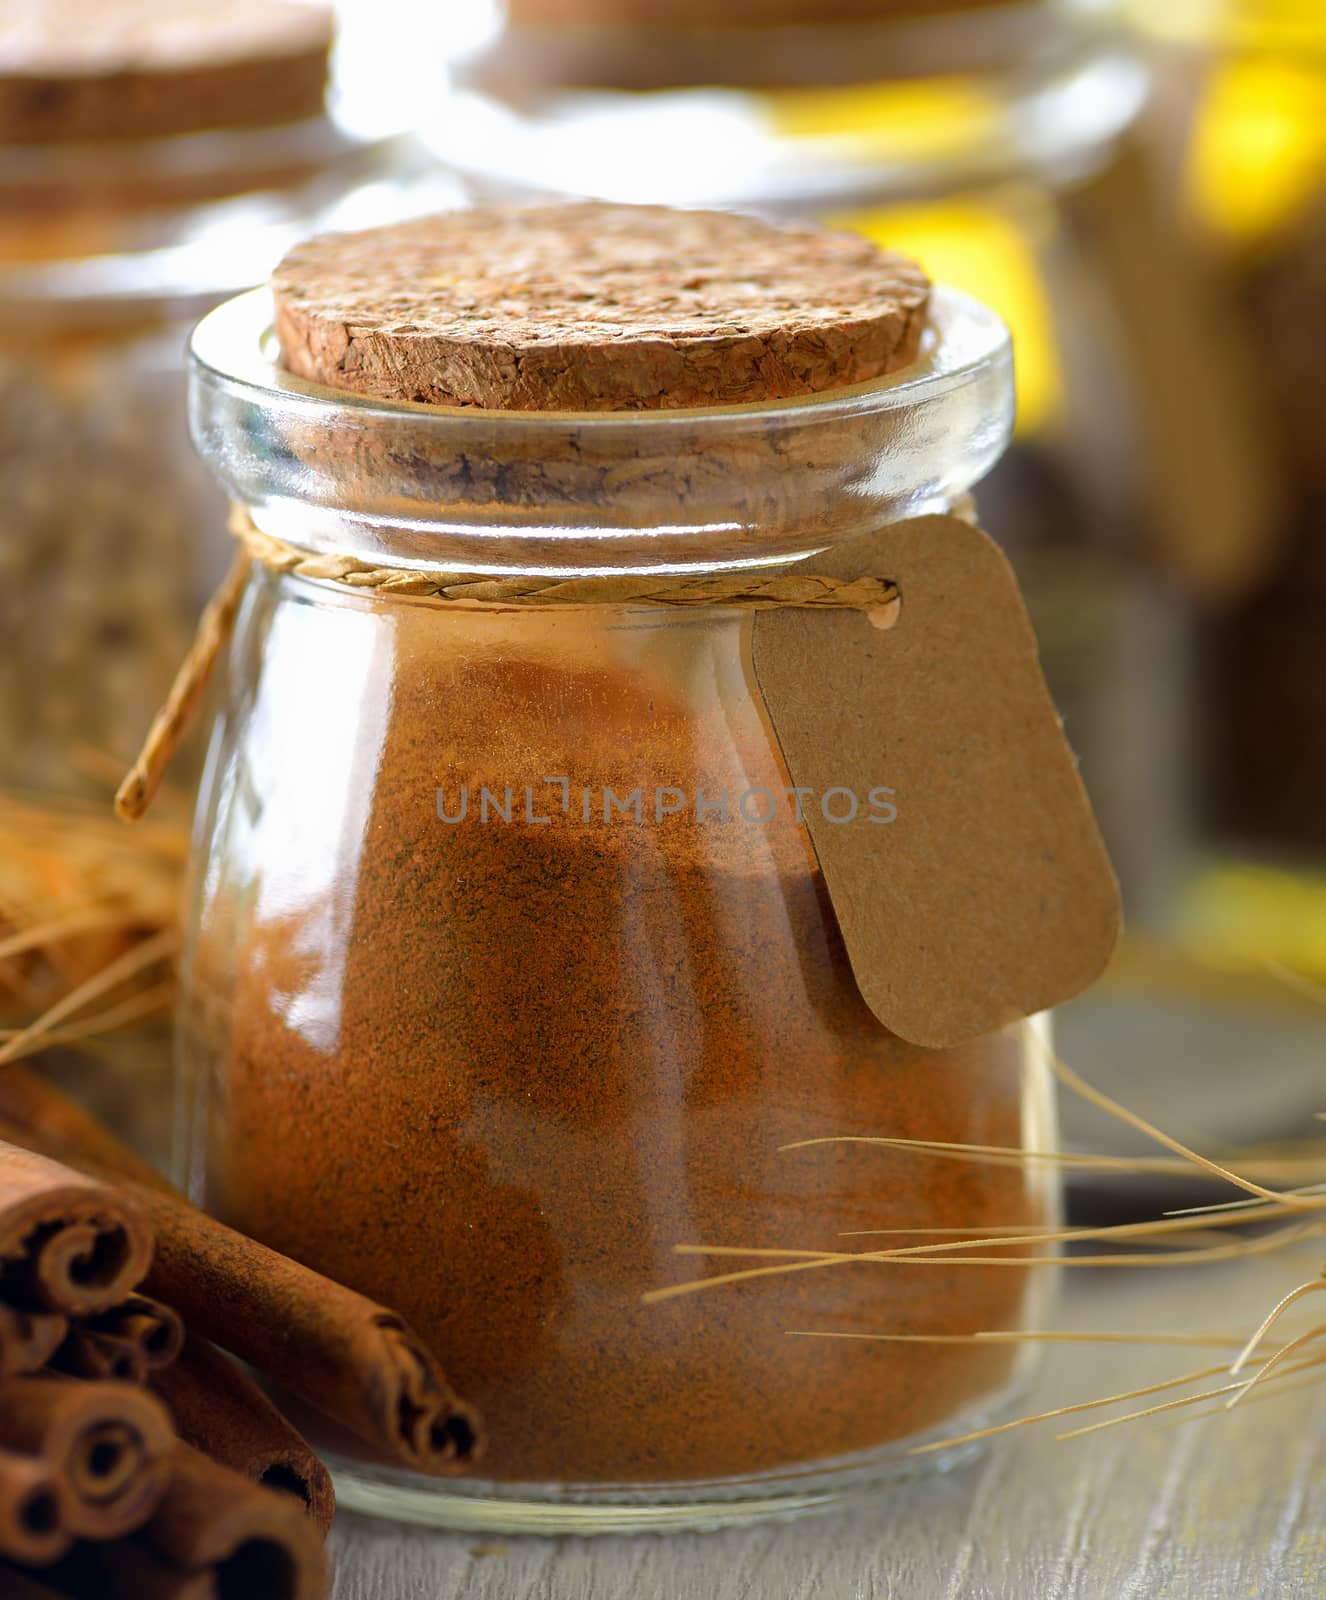 Cinnamon powder in a bottle